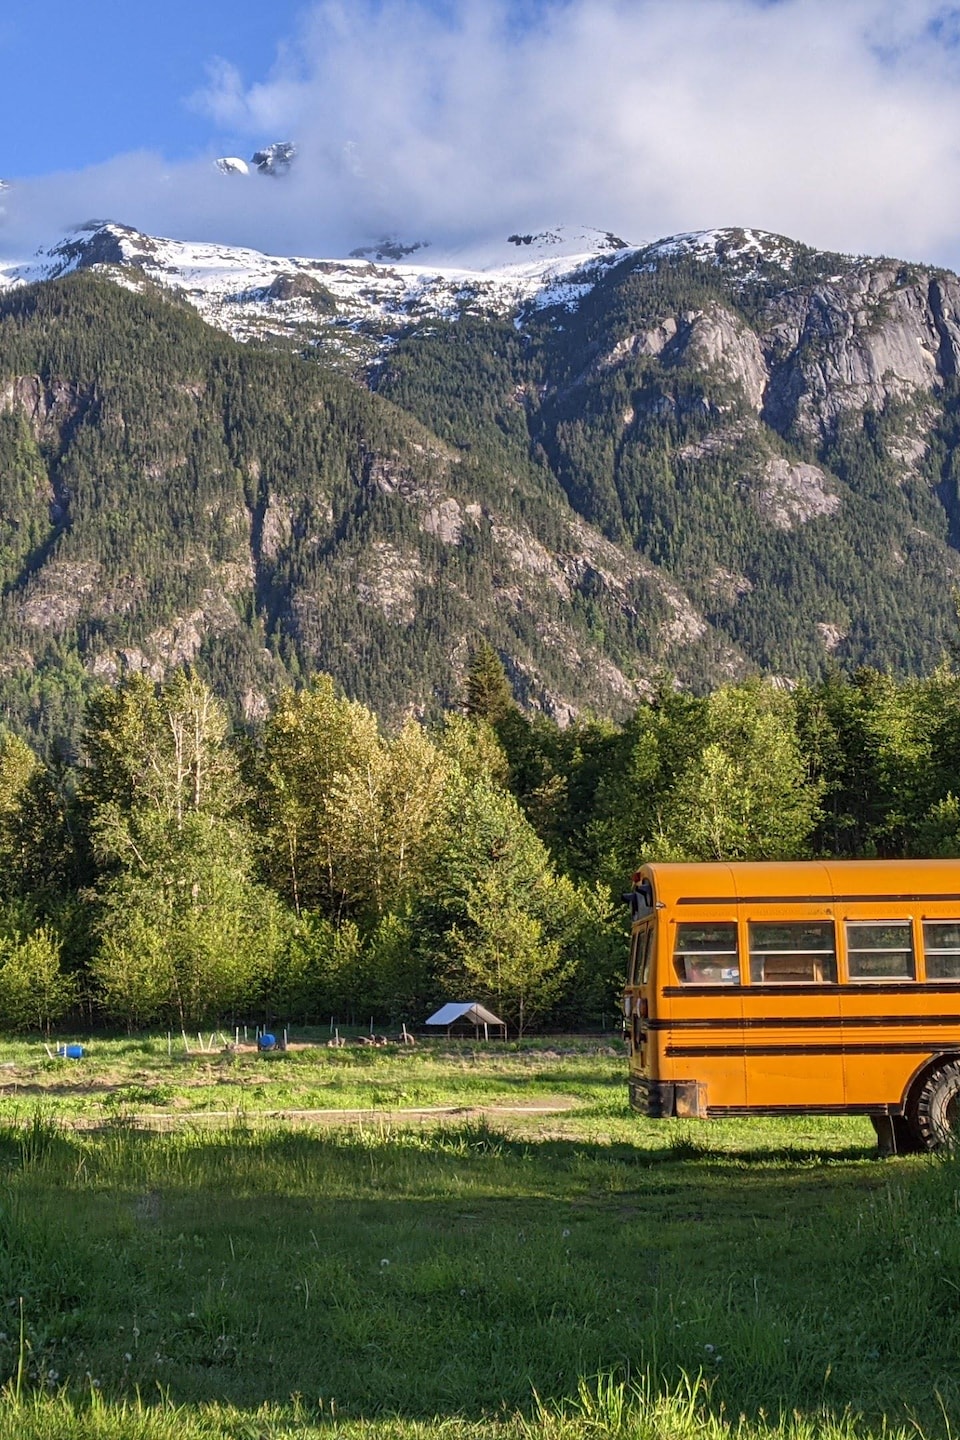 Ferme avec de vieux batiments, un vieux bus scolaire et les montagnes en arrière plan.